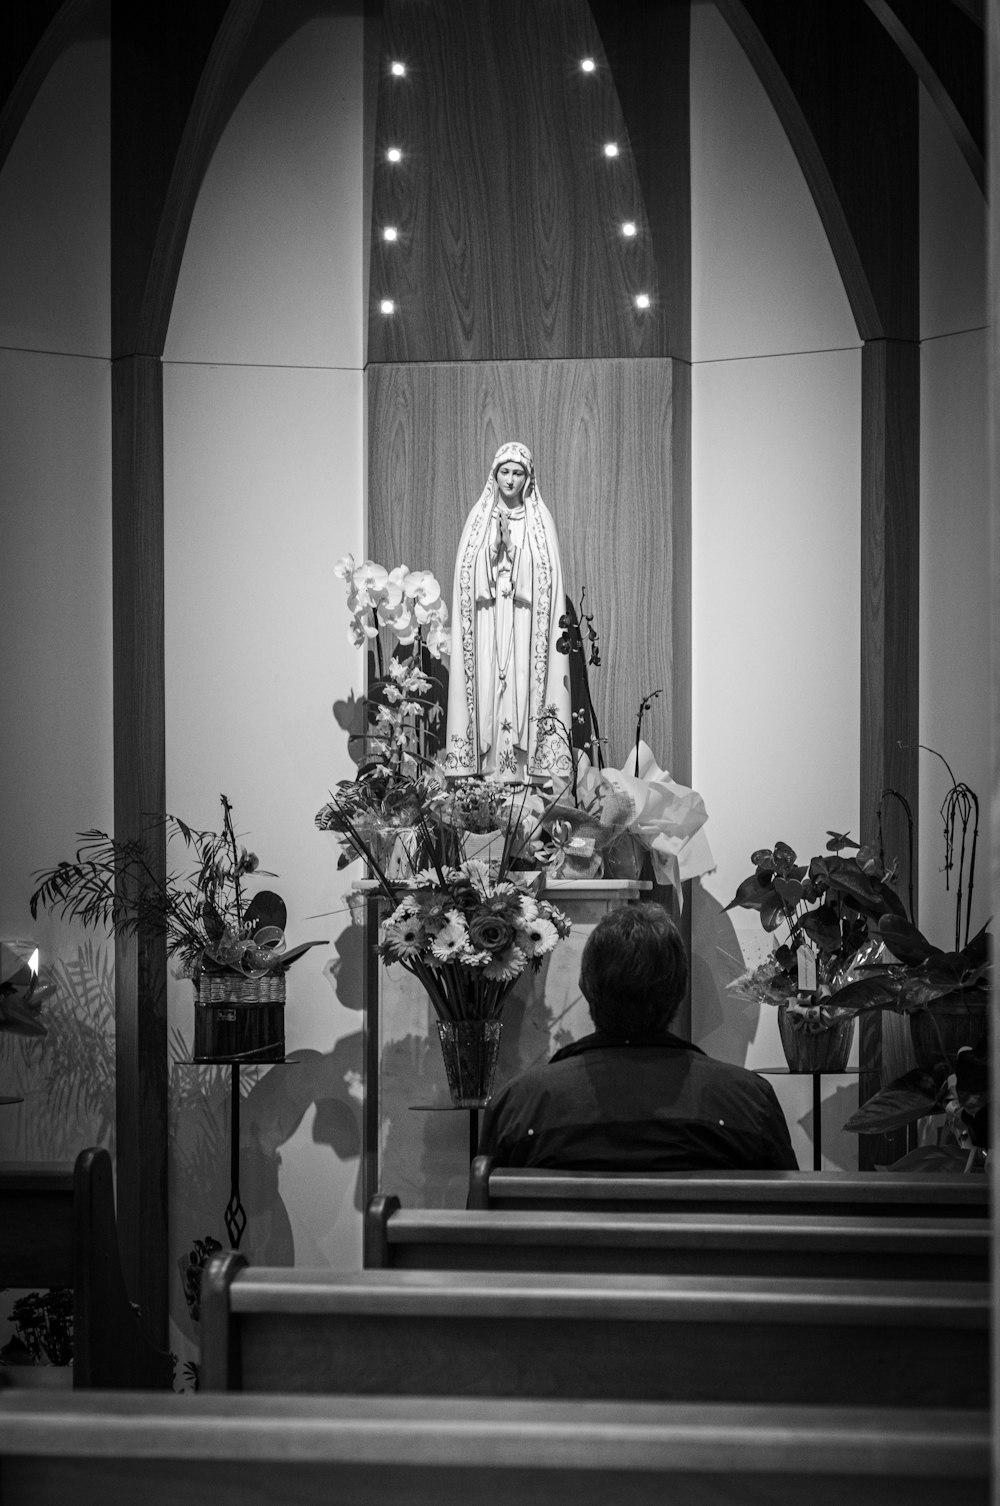 fotografia in scala di grigi di una persona seduta di fronte a una figura religiosa